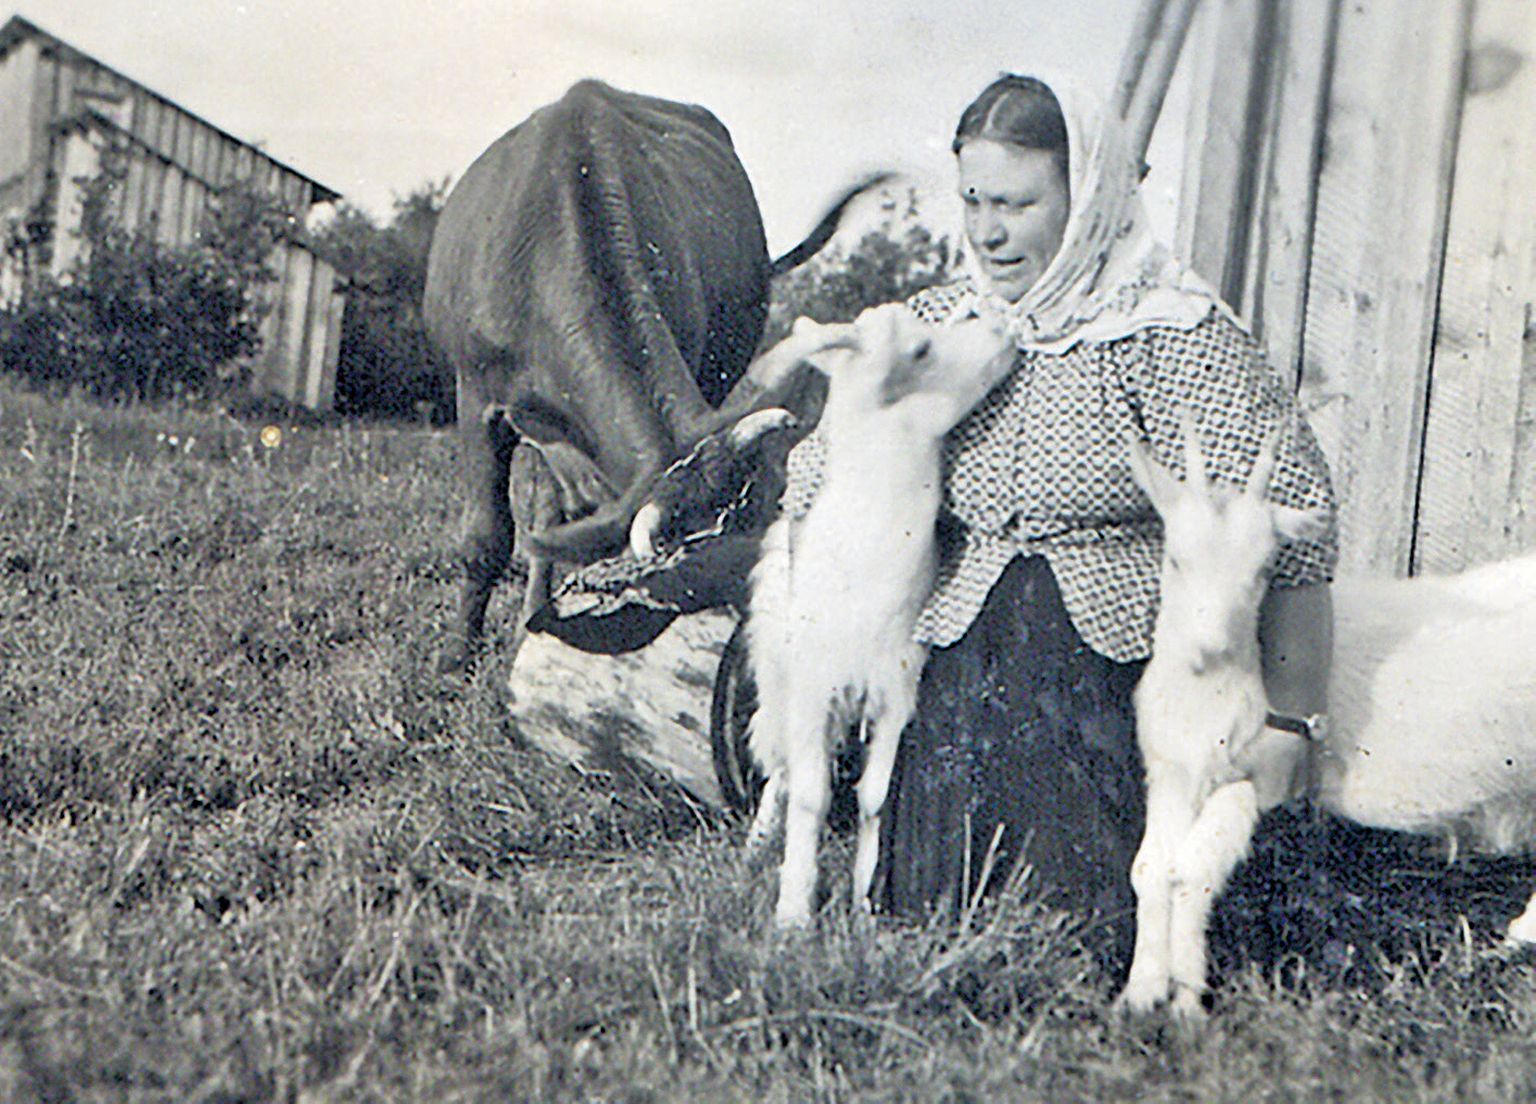 ÜKS SÕRVE TRIIN: Pildile on jäänud oma kitsekestega koos üks paljudest Sõrve Triinudest. Sõrulane Triin Puusepp (1901-1983).